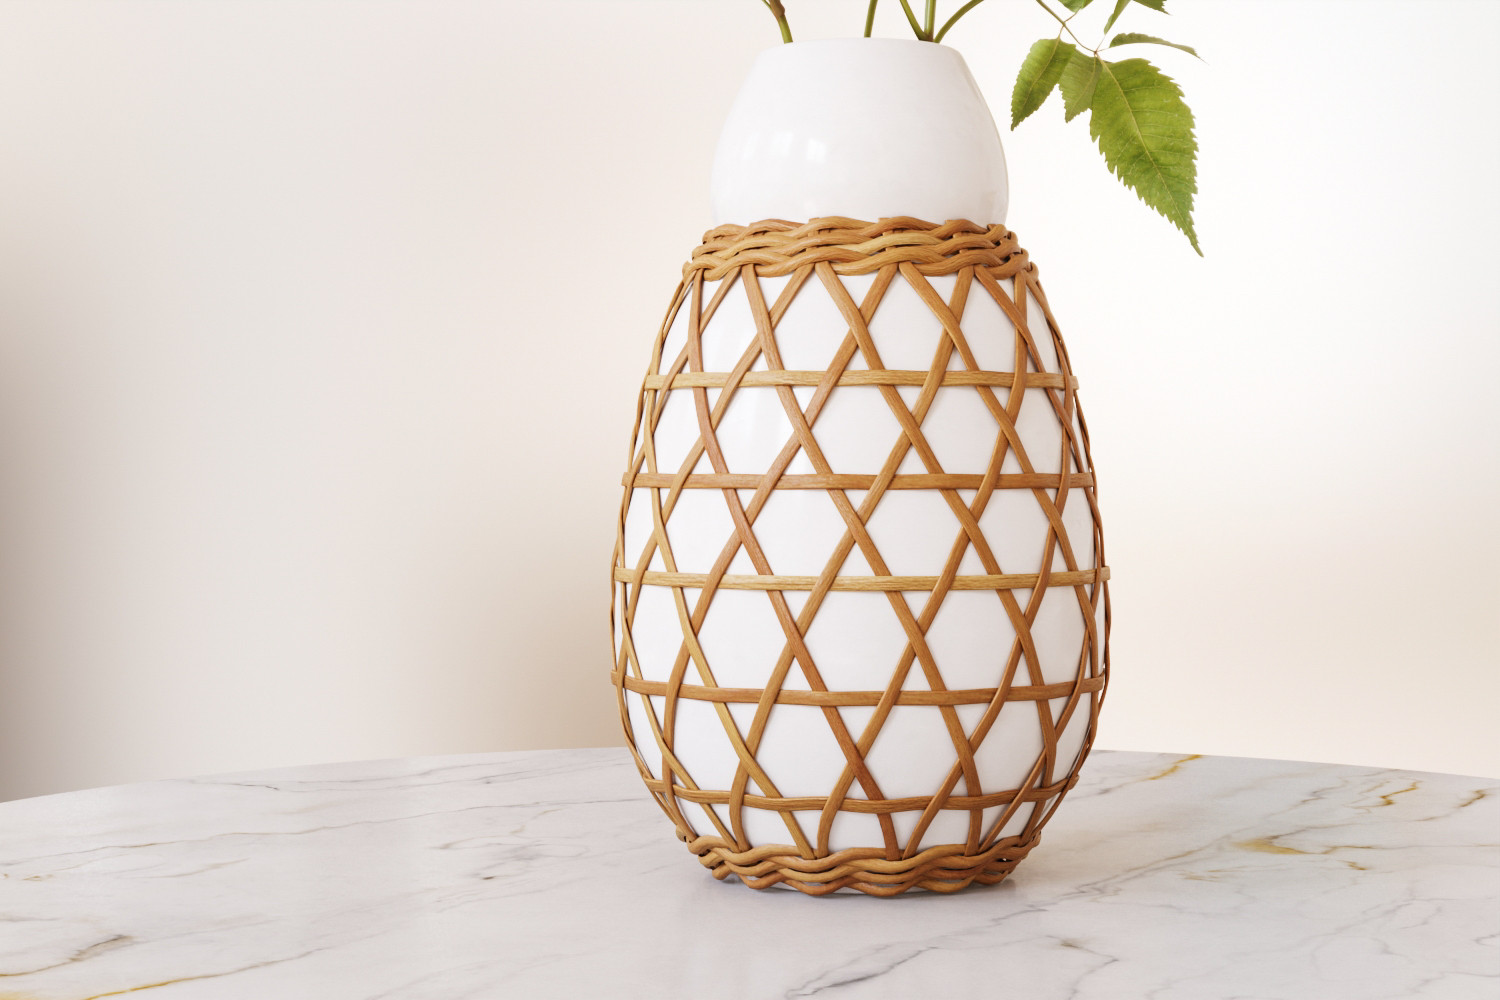 Spring plant in ceramic vase